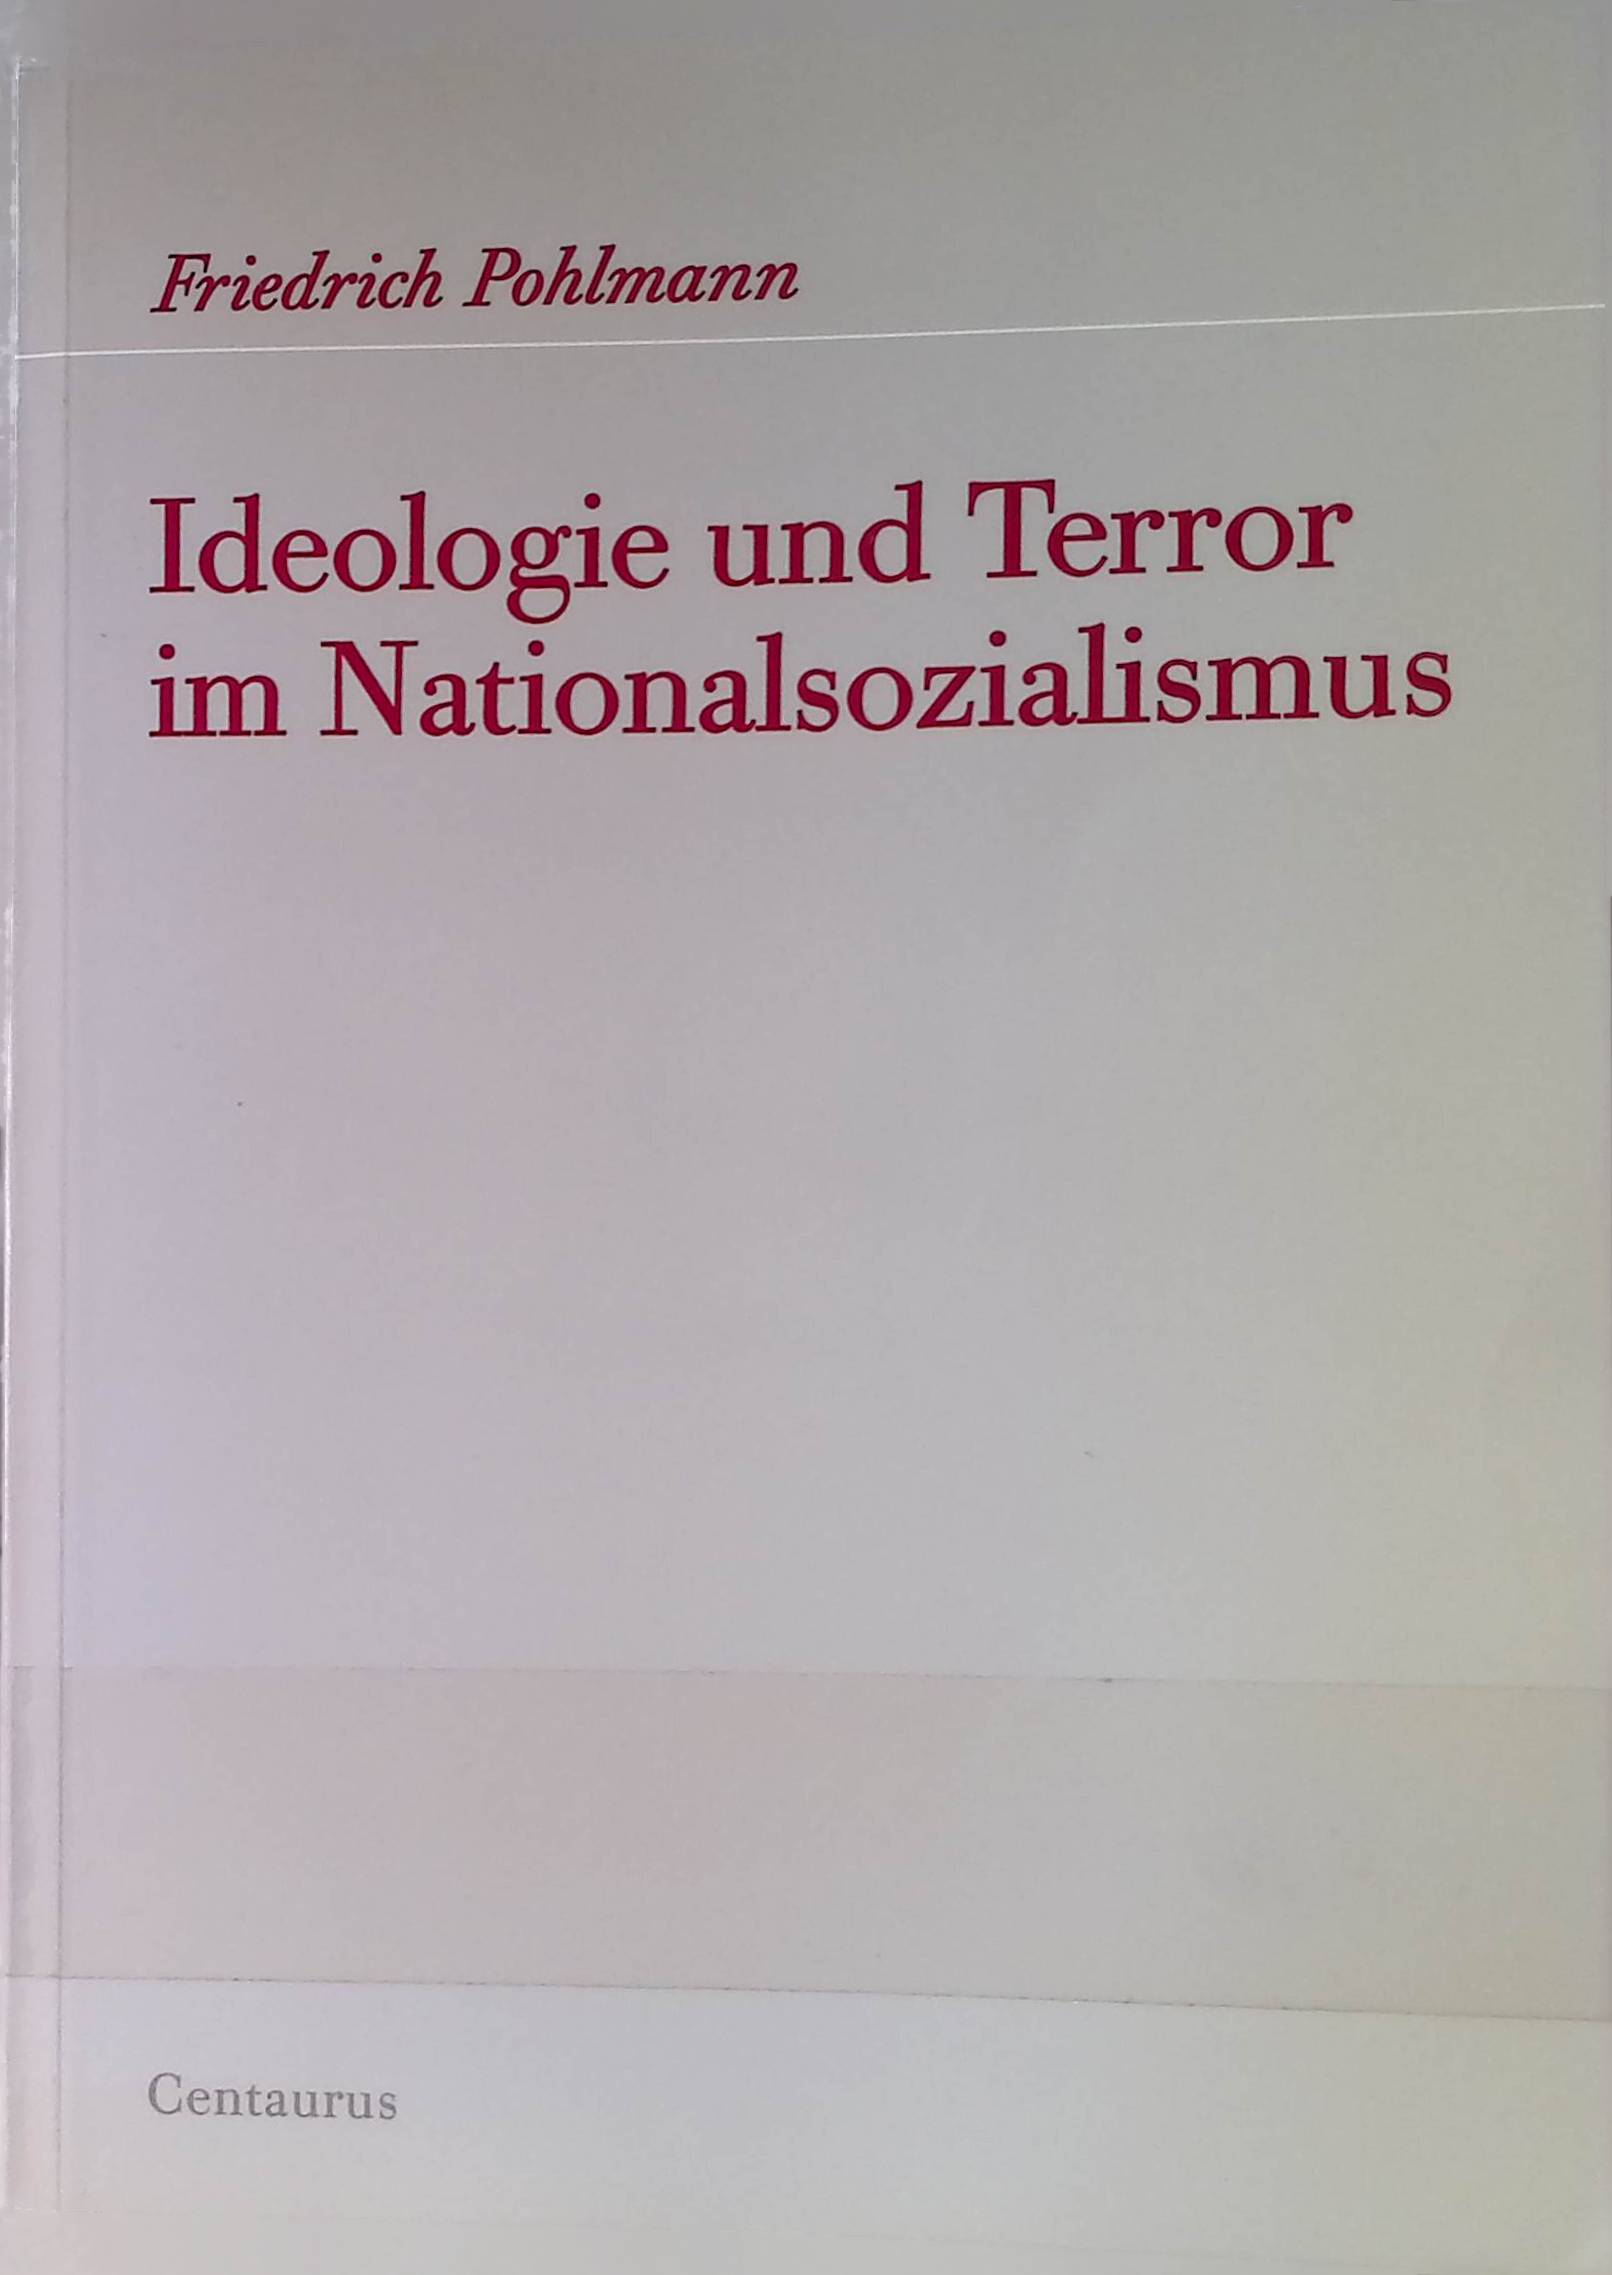 Ideologie und Terror im Nationalsozialismus. Freiburger Arbeiten zur Soziologie der Diktatur ; 1 - Pohlmann, Friedrich